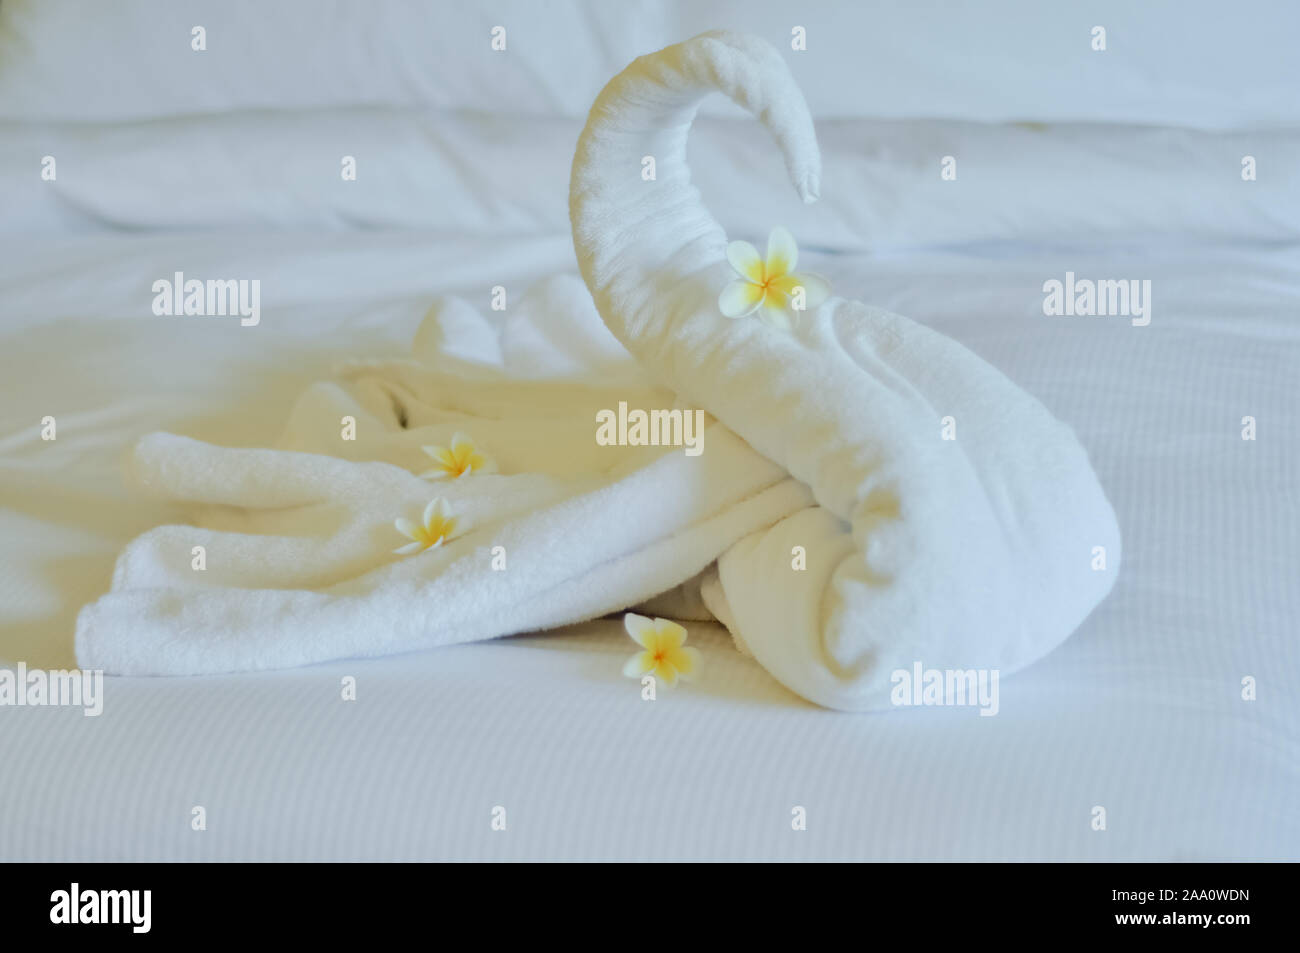 Bellissimo cigno dal bianco asciugamano da bagno decorare sul letto bianco. asciugamano swan con fiori di attualità - frangipani. Bel saluto dall'hotel. Foto Stock